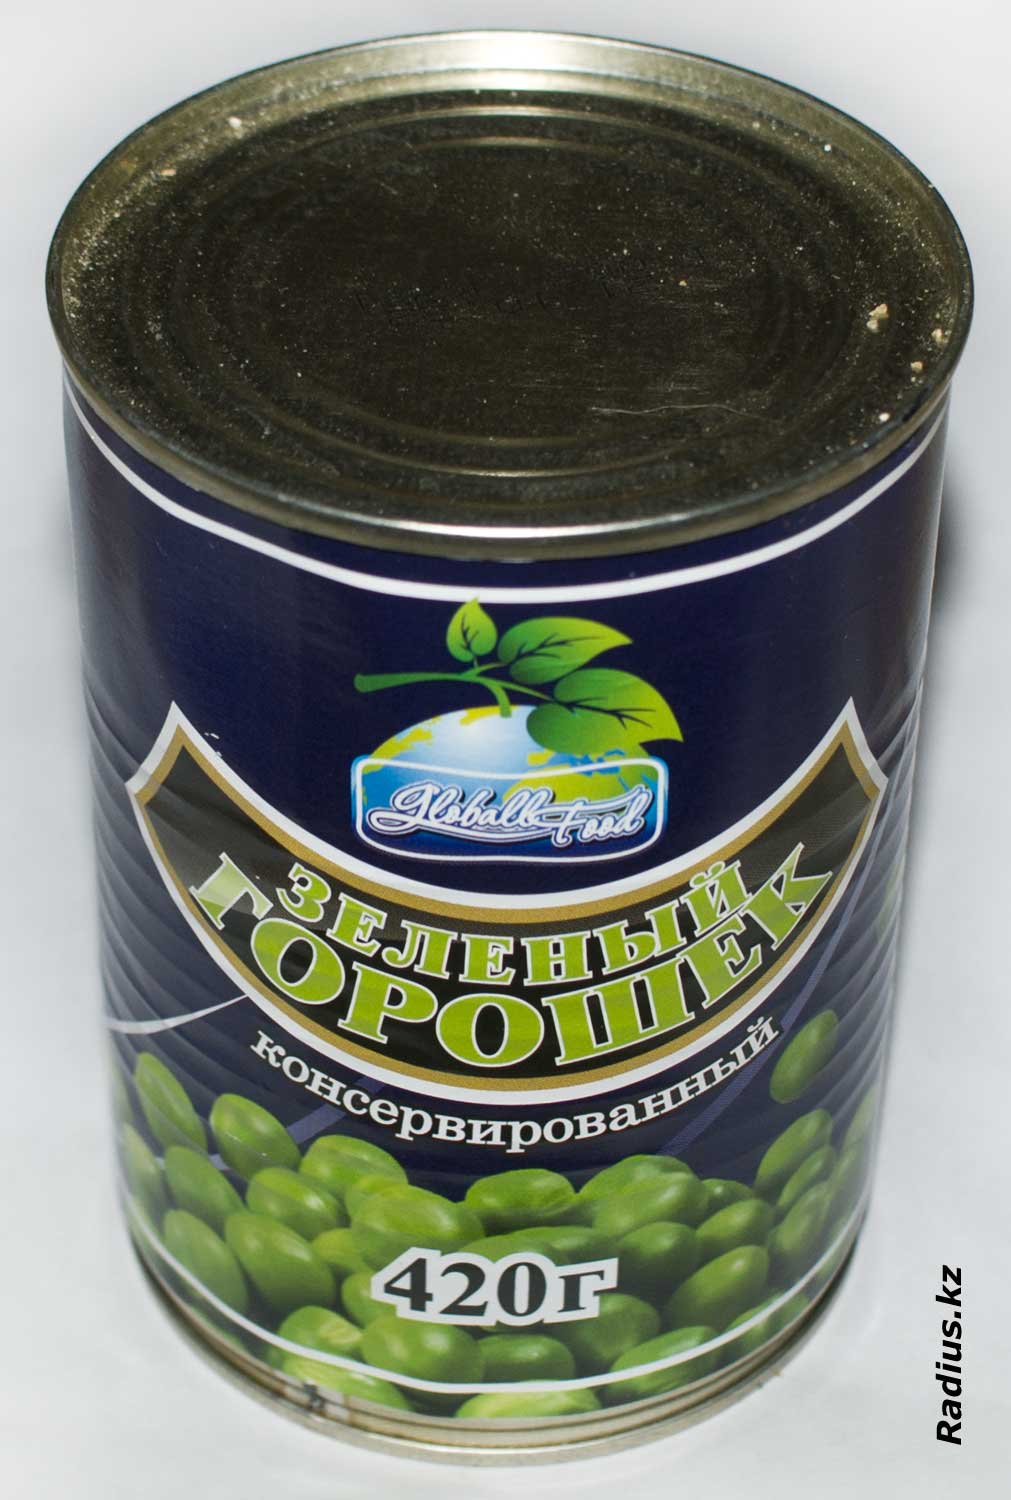 отзыв на Globall Food Зеленый горошек от Вяземские консервы - ужасно!